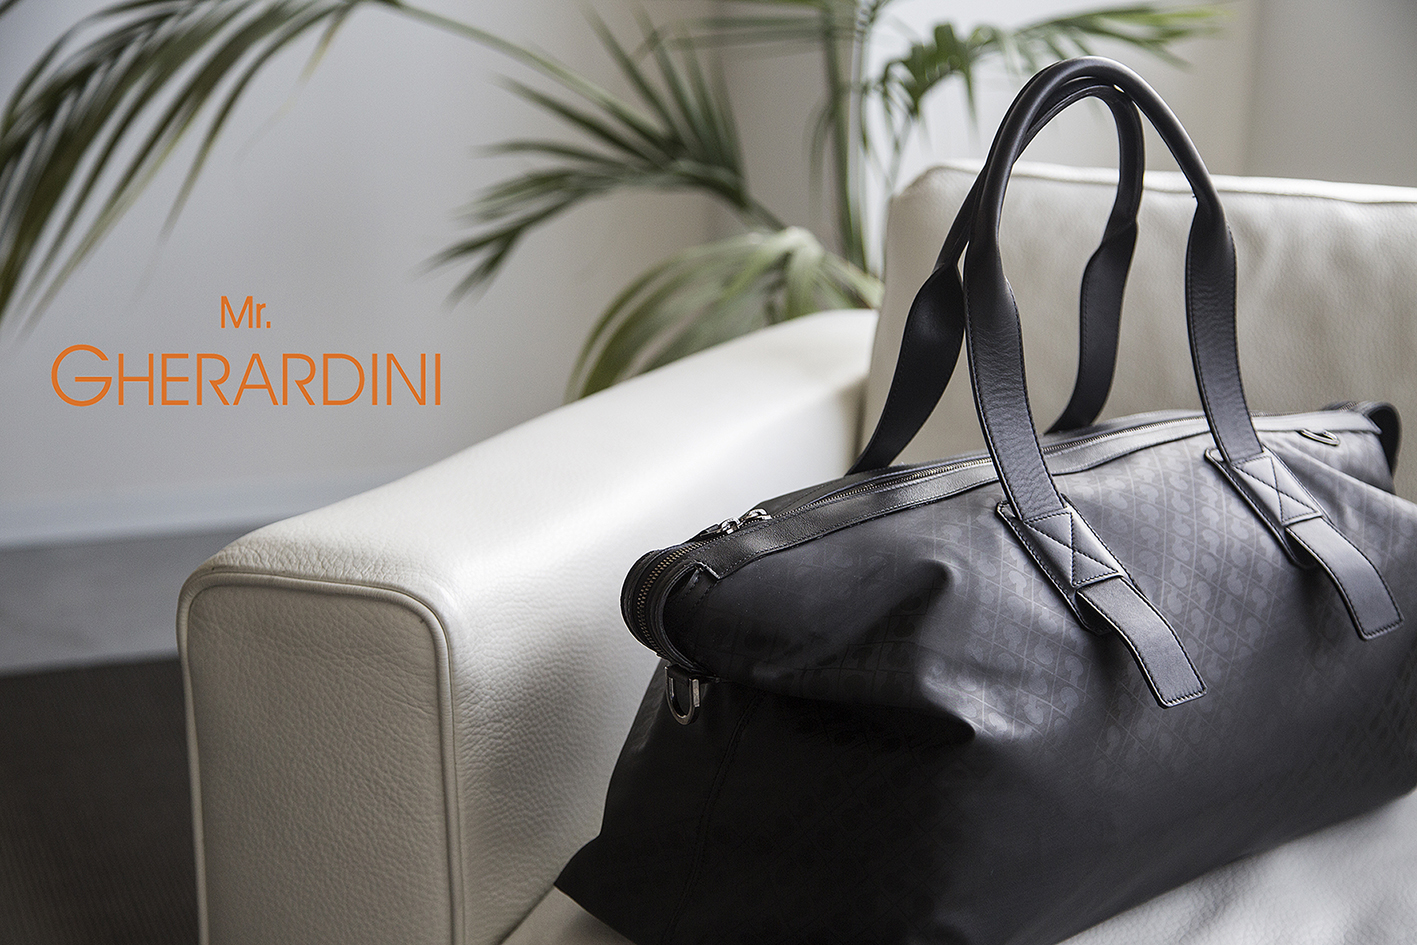 Pitti Uomo Giugno 2015 Firenze: Gherardini presenta Mr. Gherardini, la prima collezione di accessori maschili